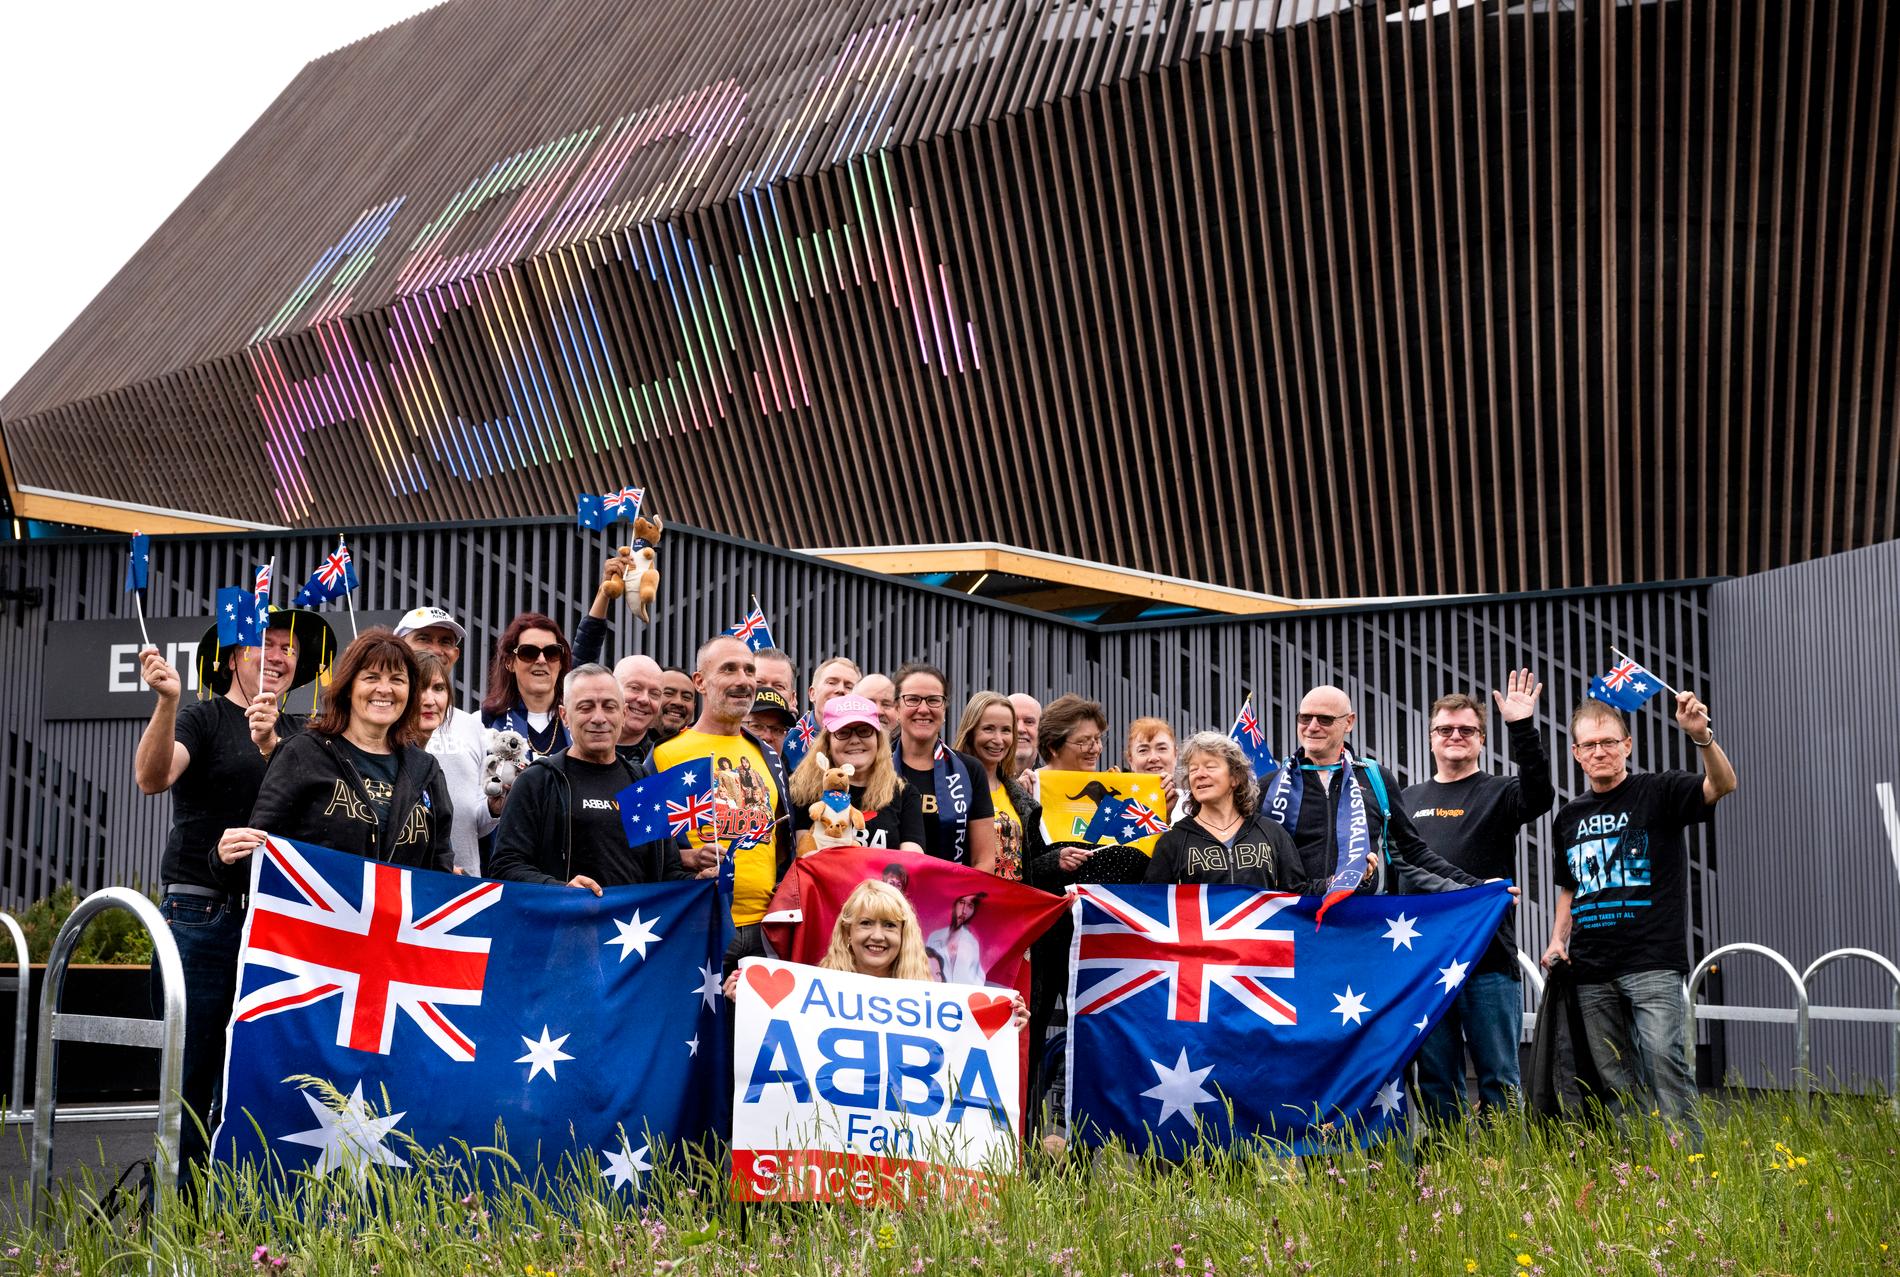 De australiska Abba-fansen vid den nybyggda arenan i Queen Elizabeth Olympic Park i London ser fram emot "Abba voyage".